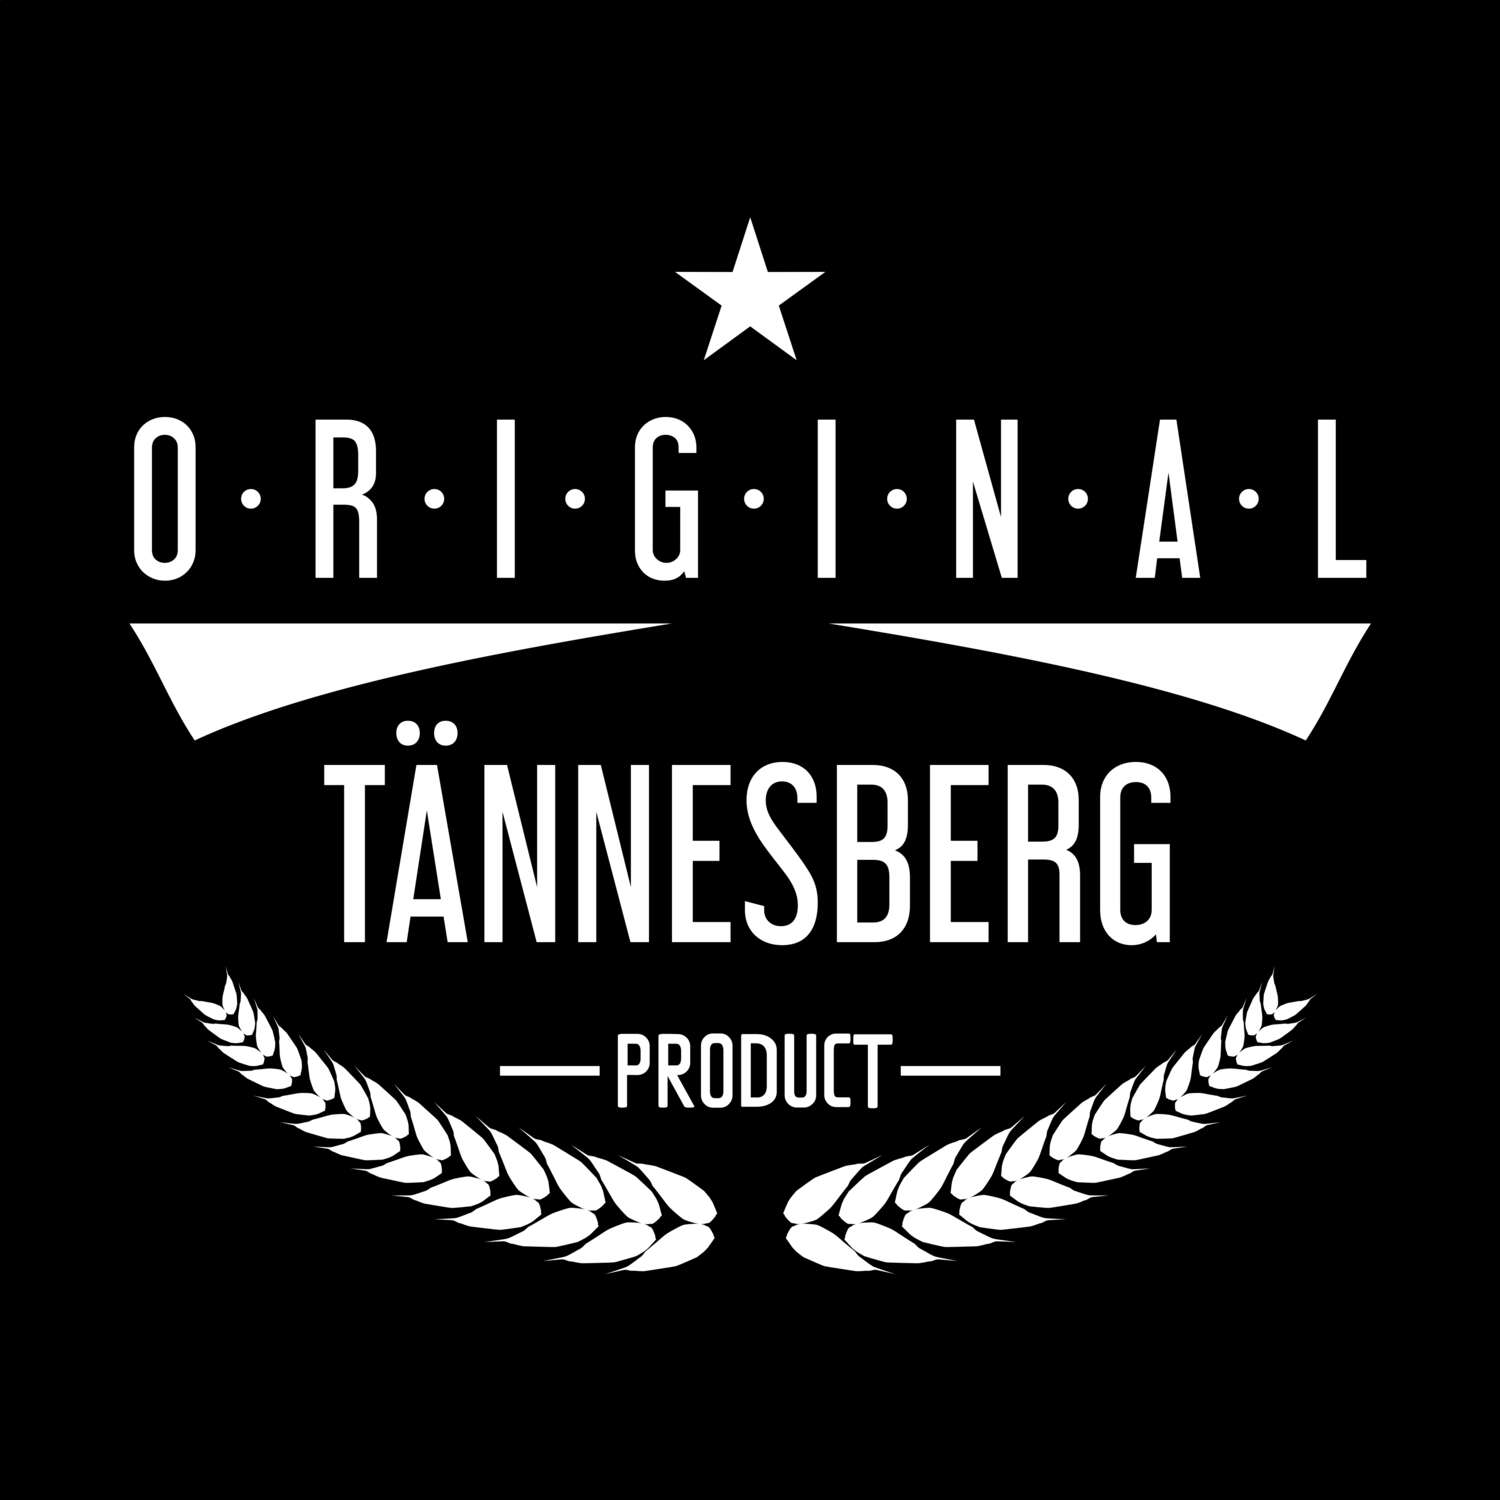 Tännesberg T-Shirt »Original Product«